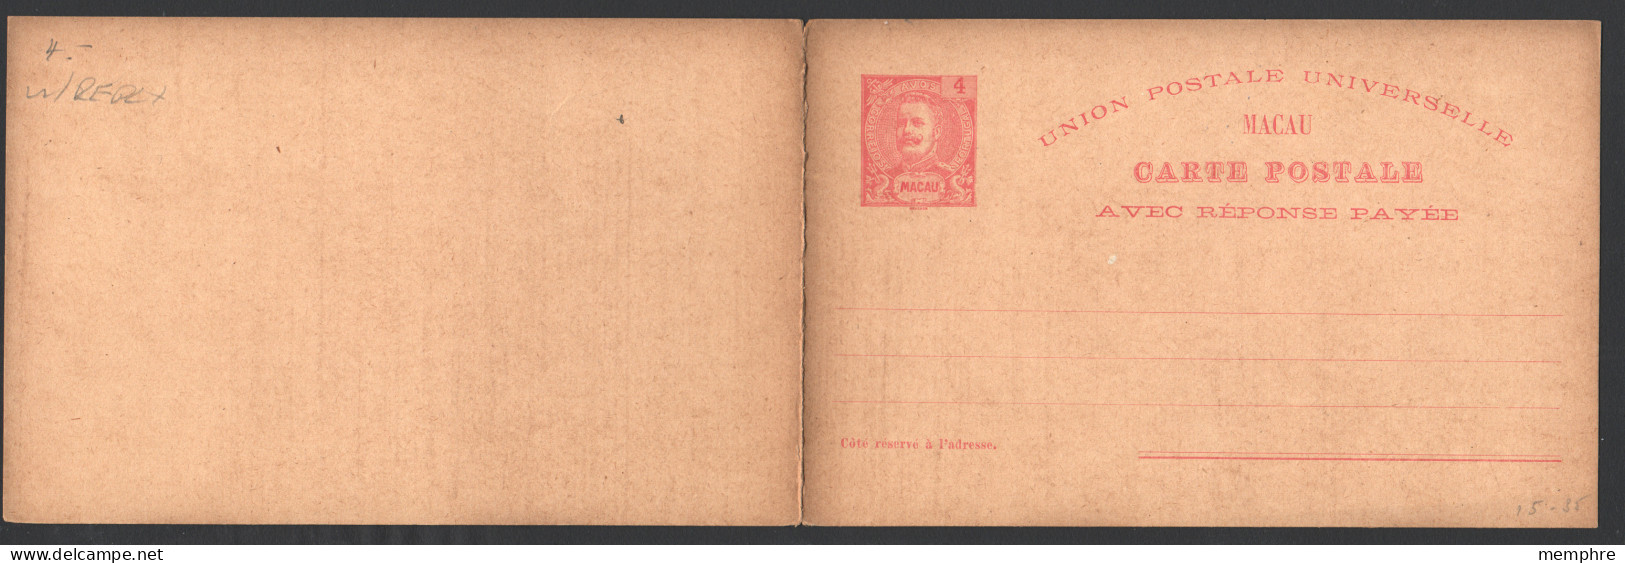 1903  Carte Postale Avec Réponse Payée Carlos 4 Avos  Neuve - Covers & Documents